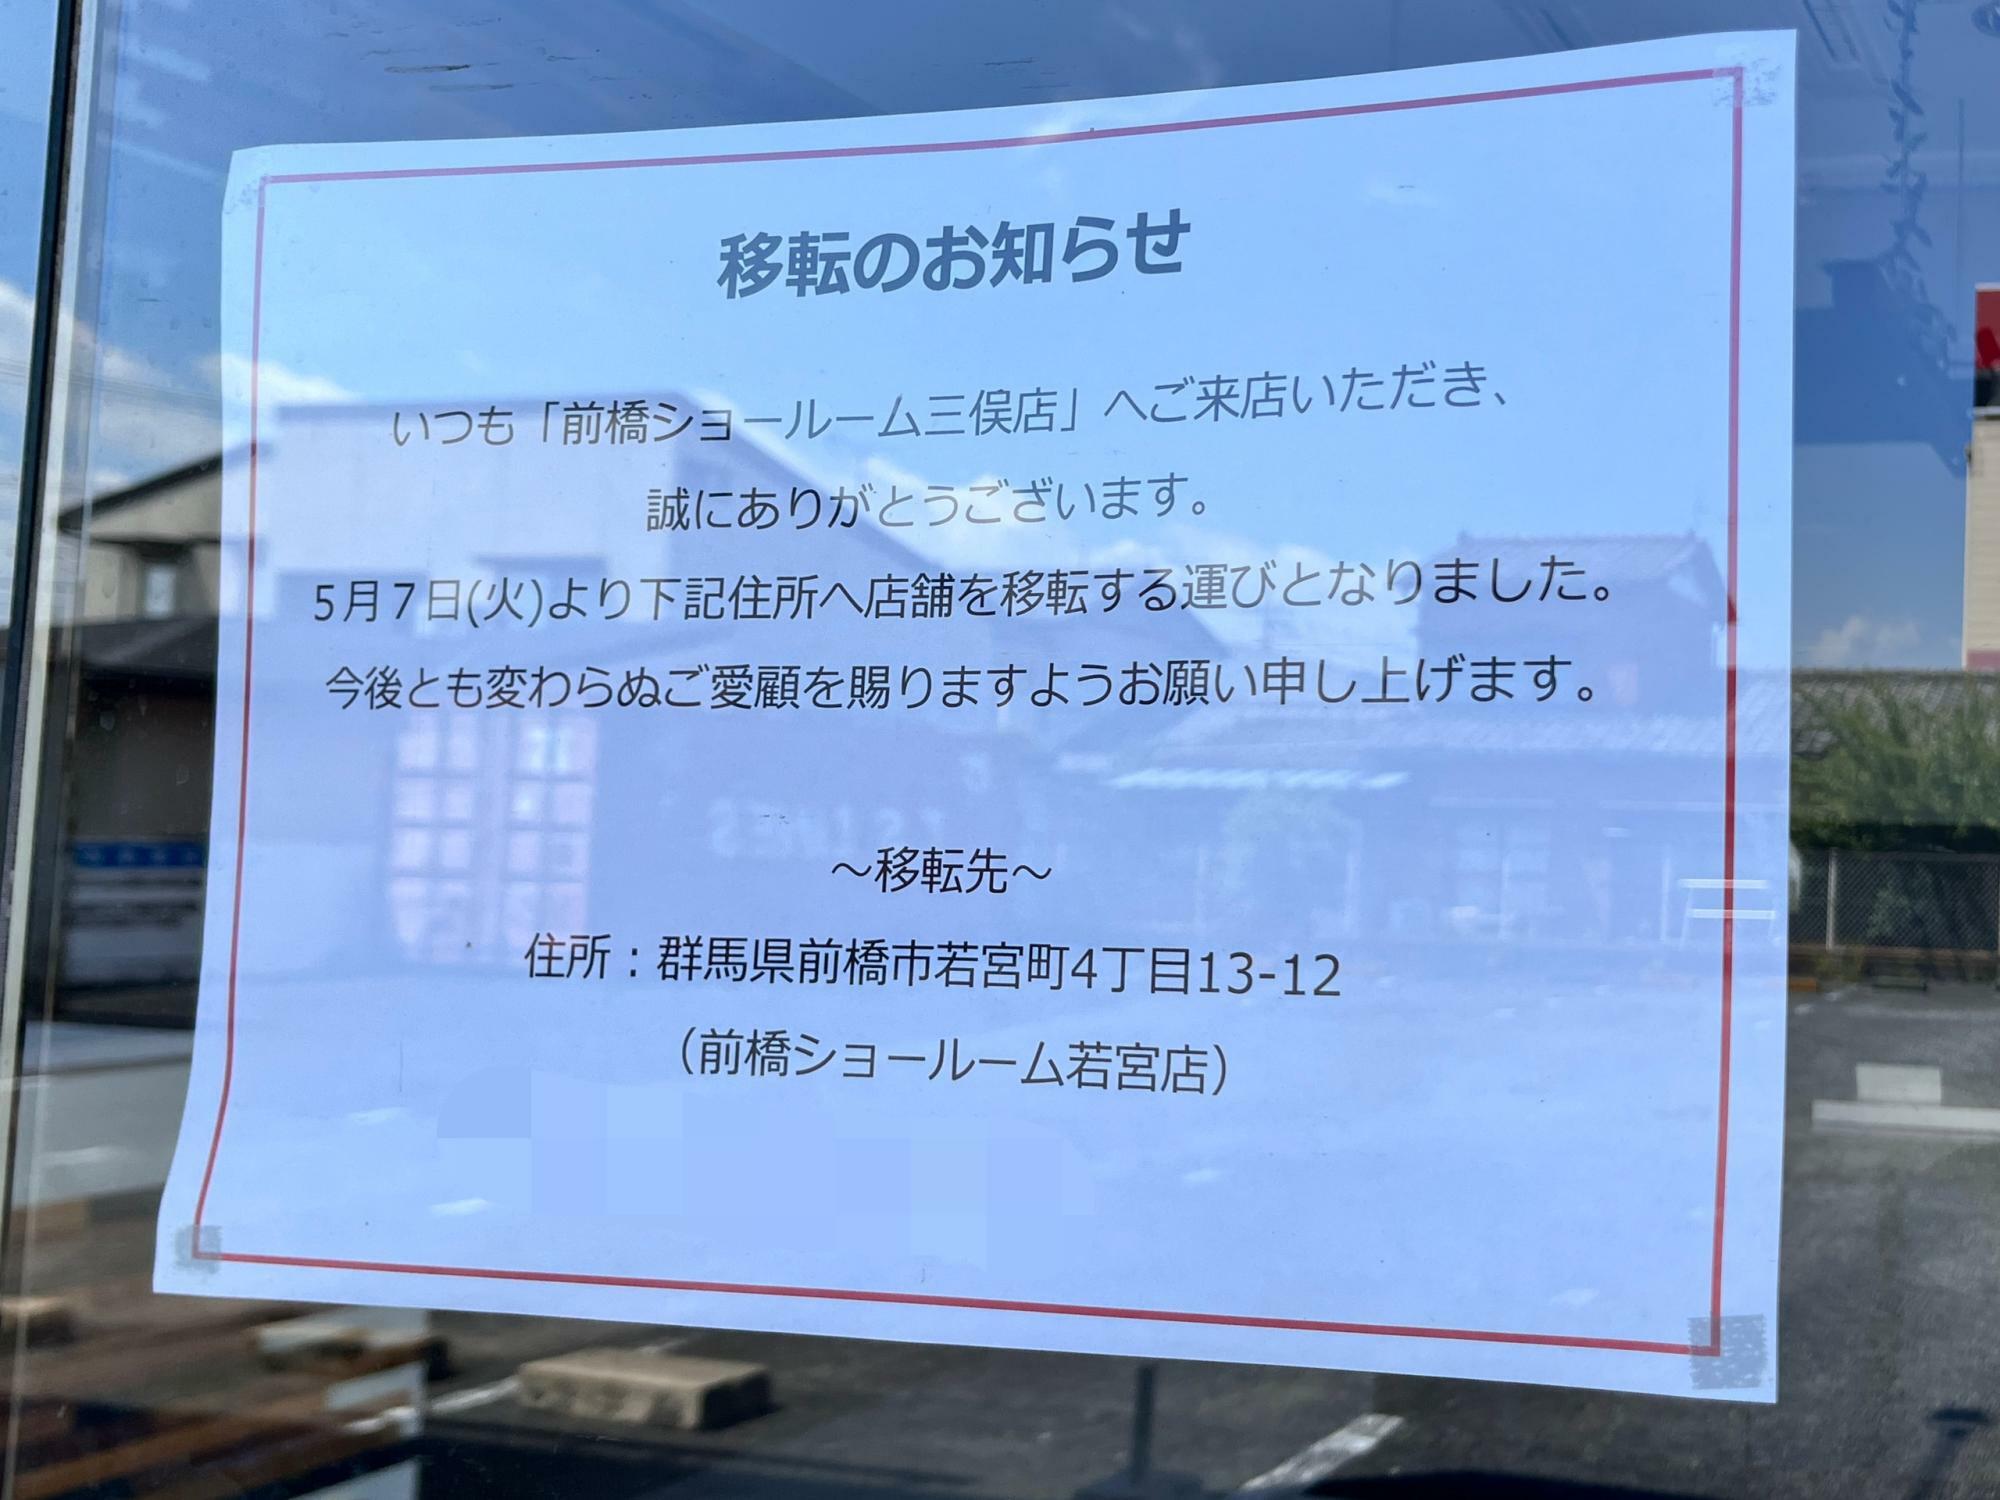 「ミタカ工房 前橋ショールーム三俣店」店頭の「移転のお知らせ」